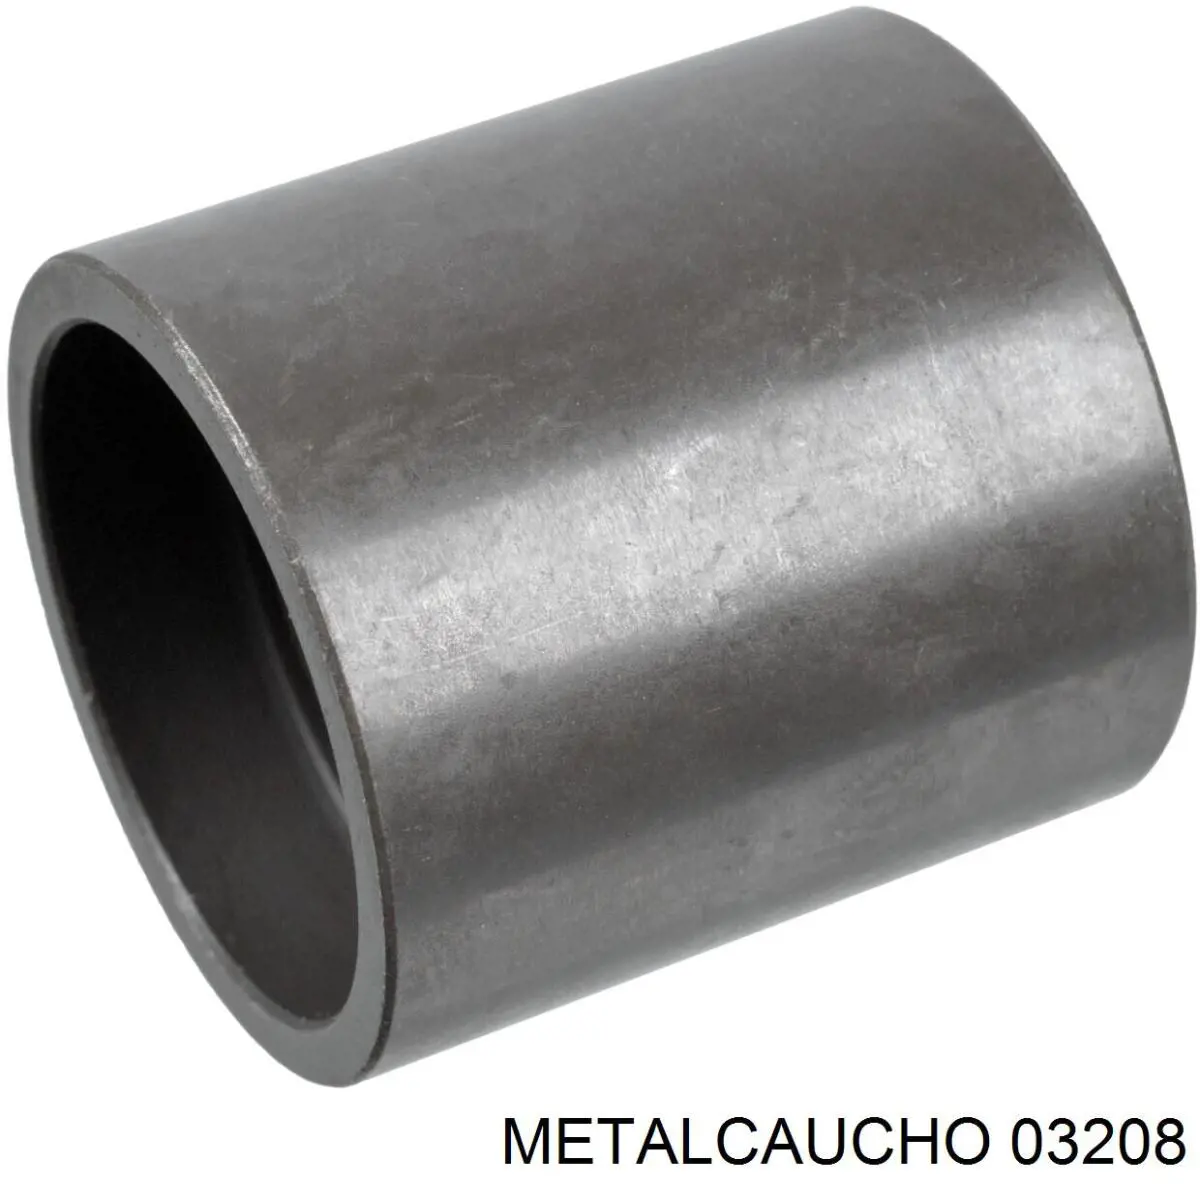 03208 Metalcaucho manguera (conducto del sistema de refrigeración)